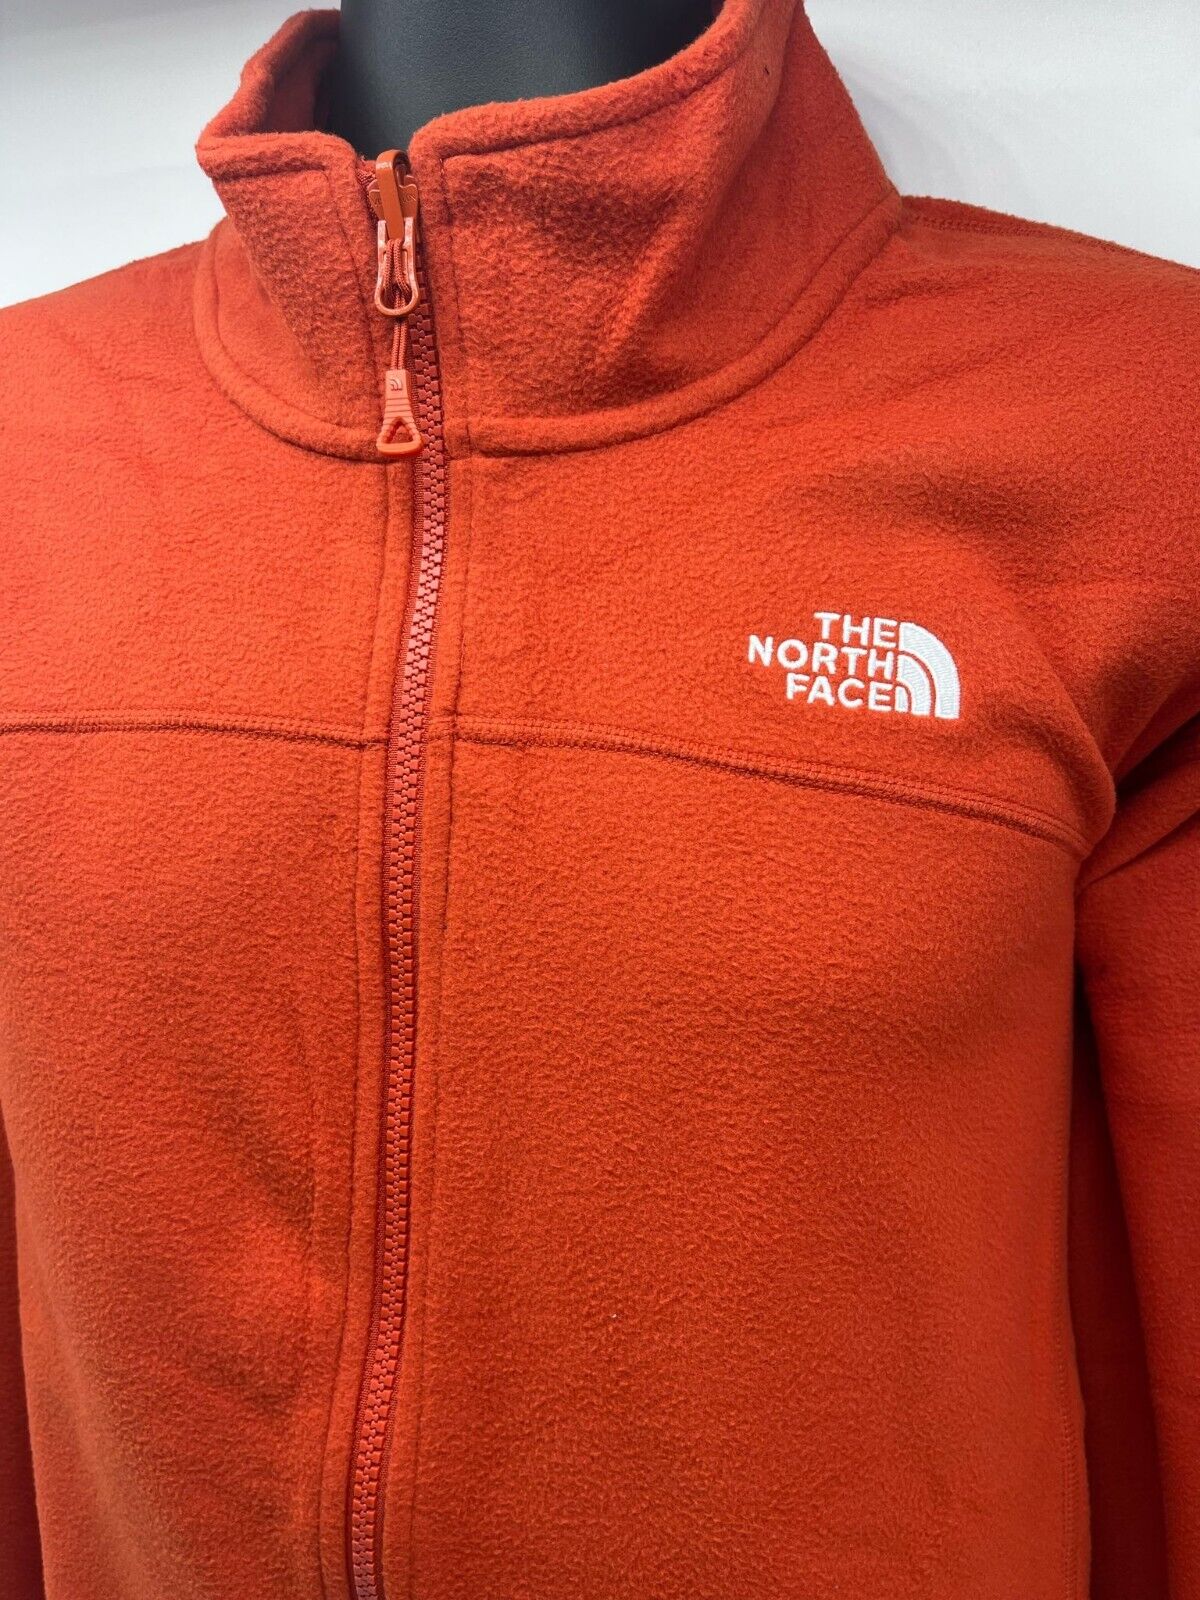 The North Face Men 100 Glacier  Full Zip Jacket Coat D1119